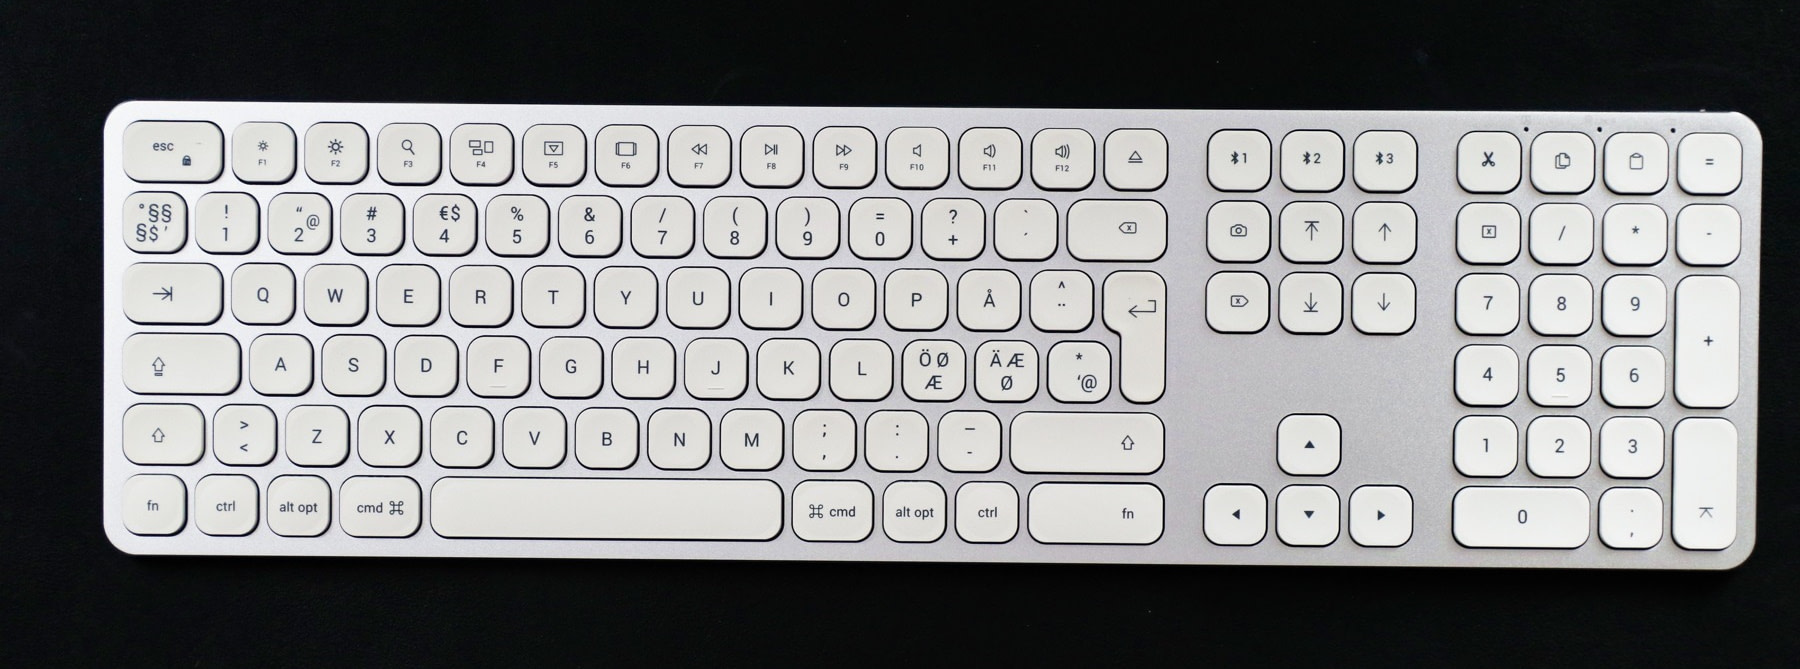 best wireless keyboard for mac pro